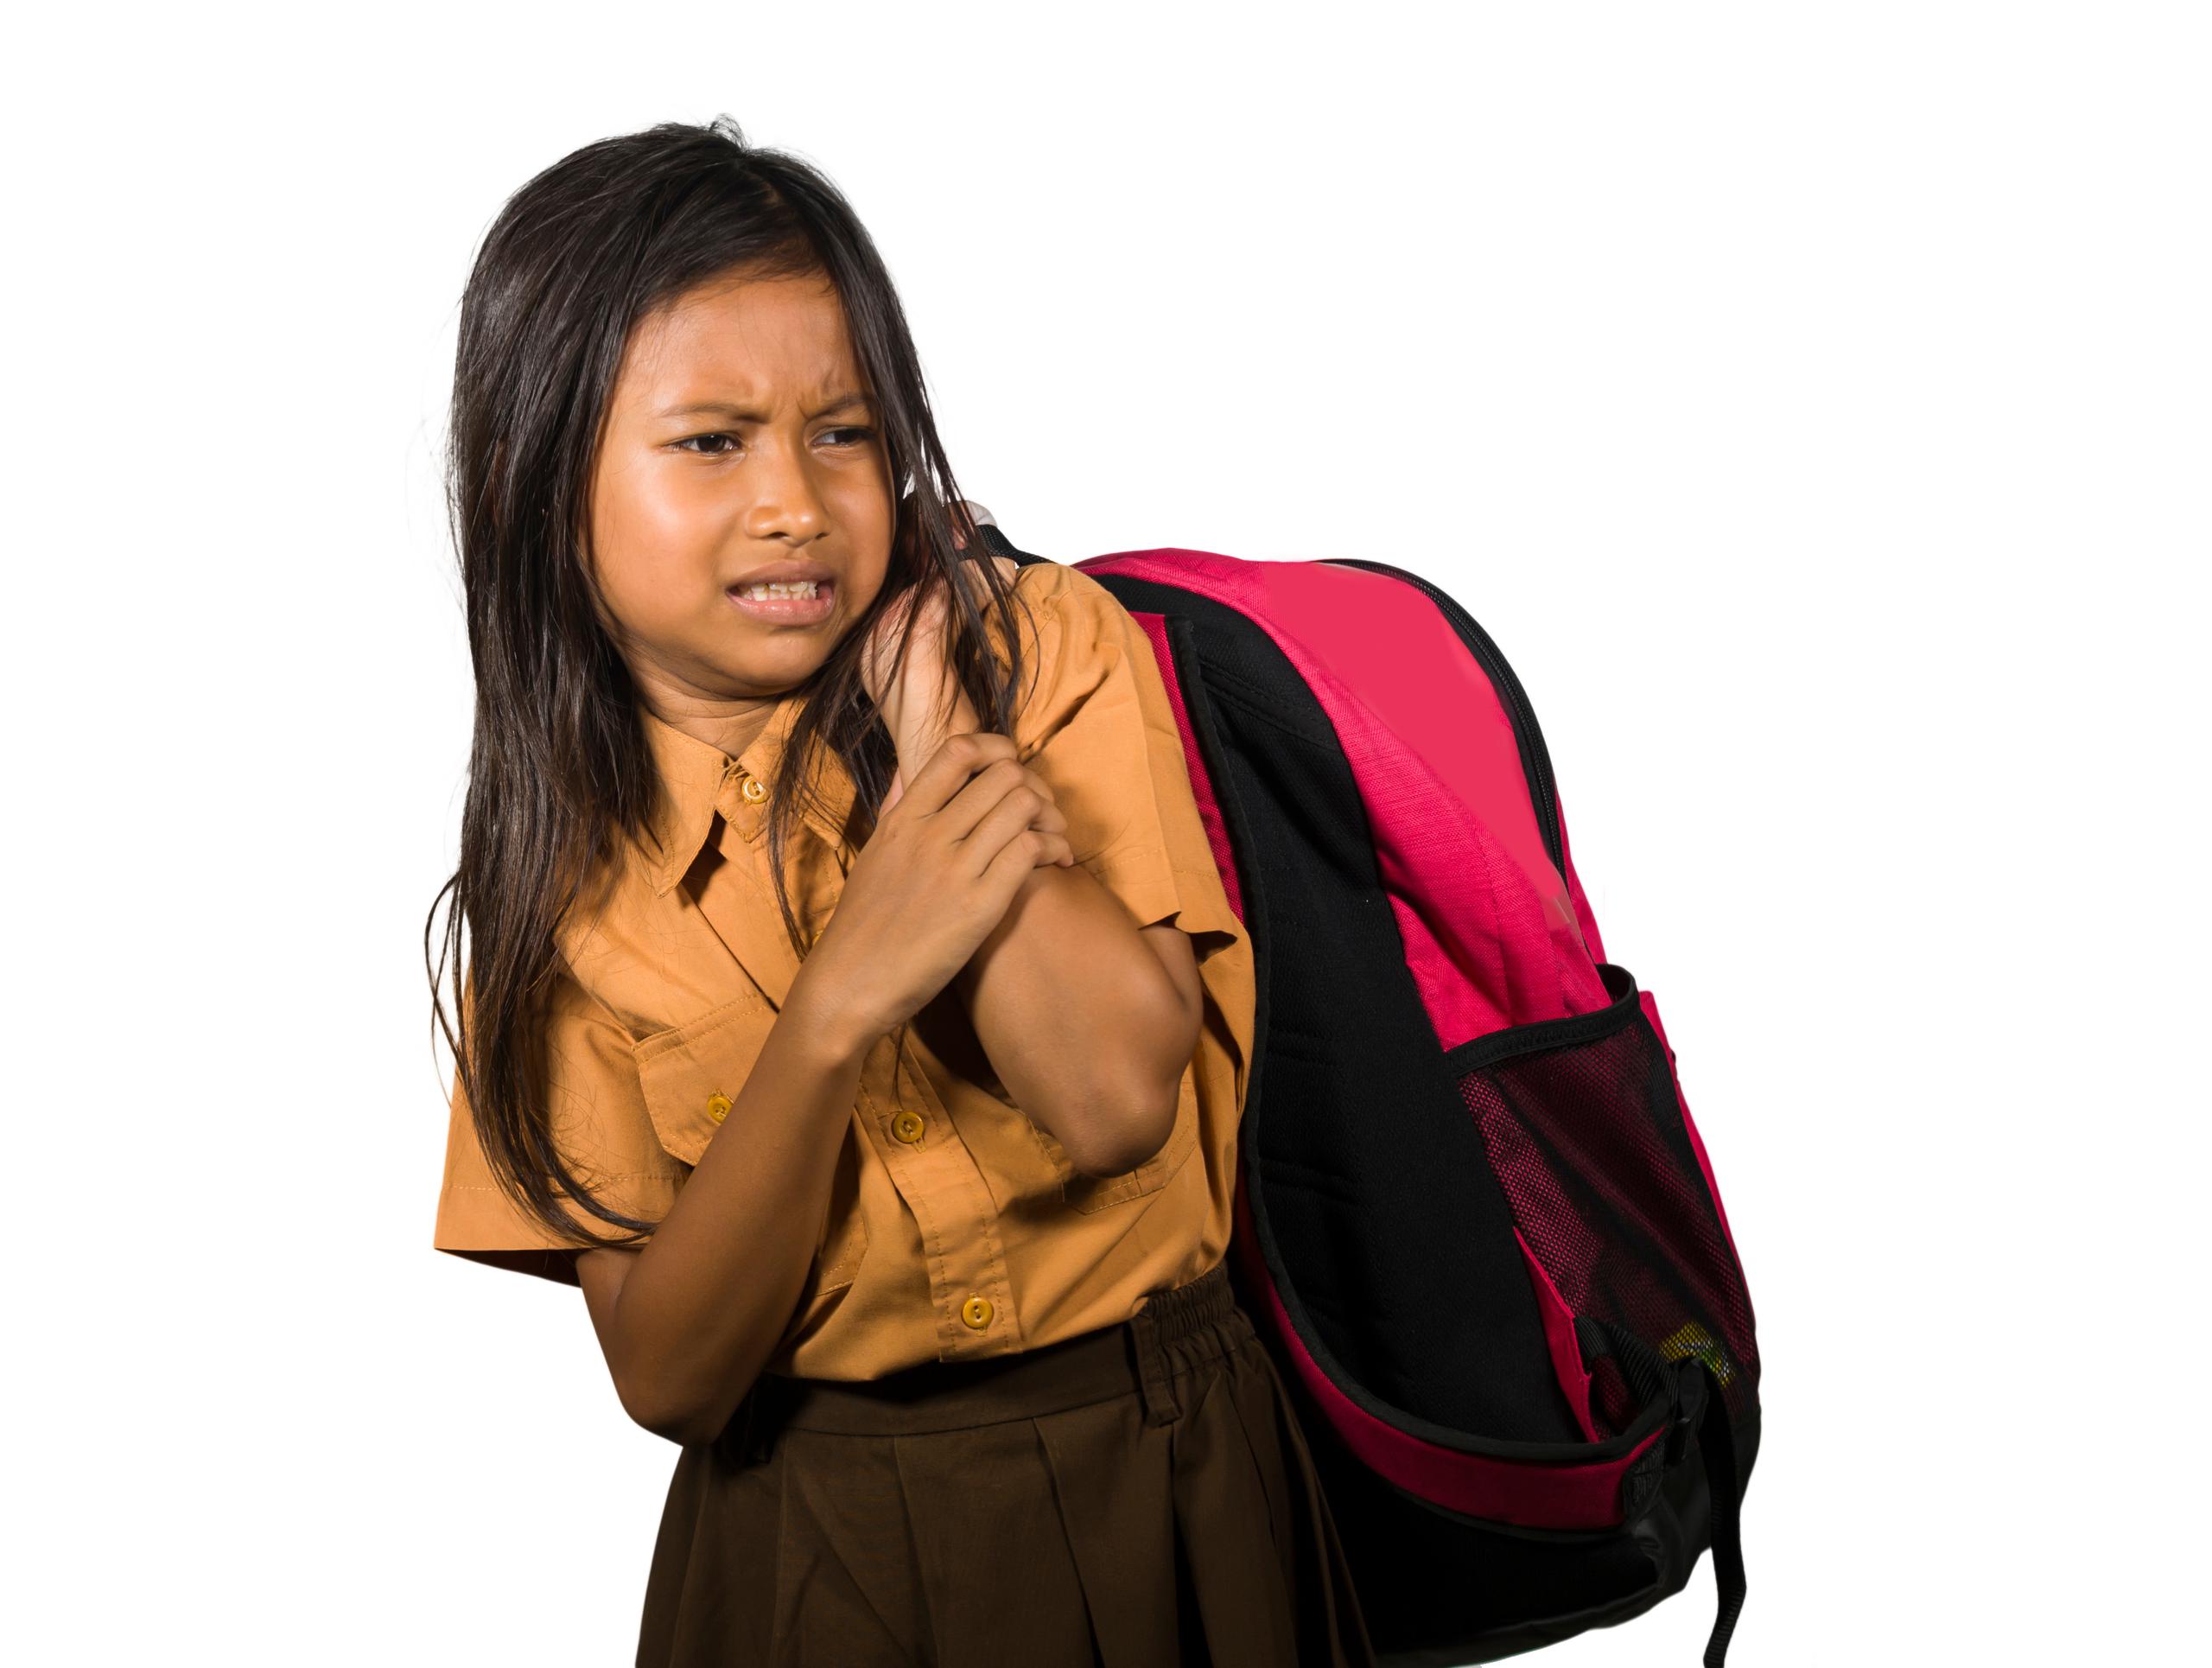 La mochila no debe pesar más que el 10% del peso del estudiante y debe ser de un tamaño adecuado.